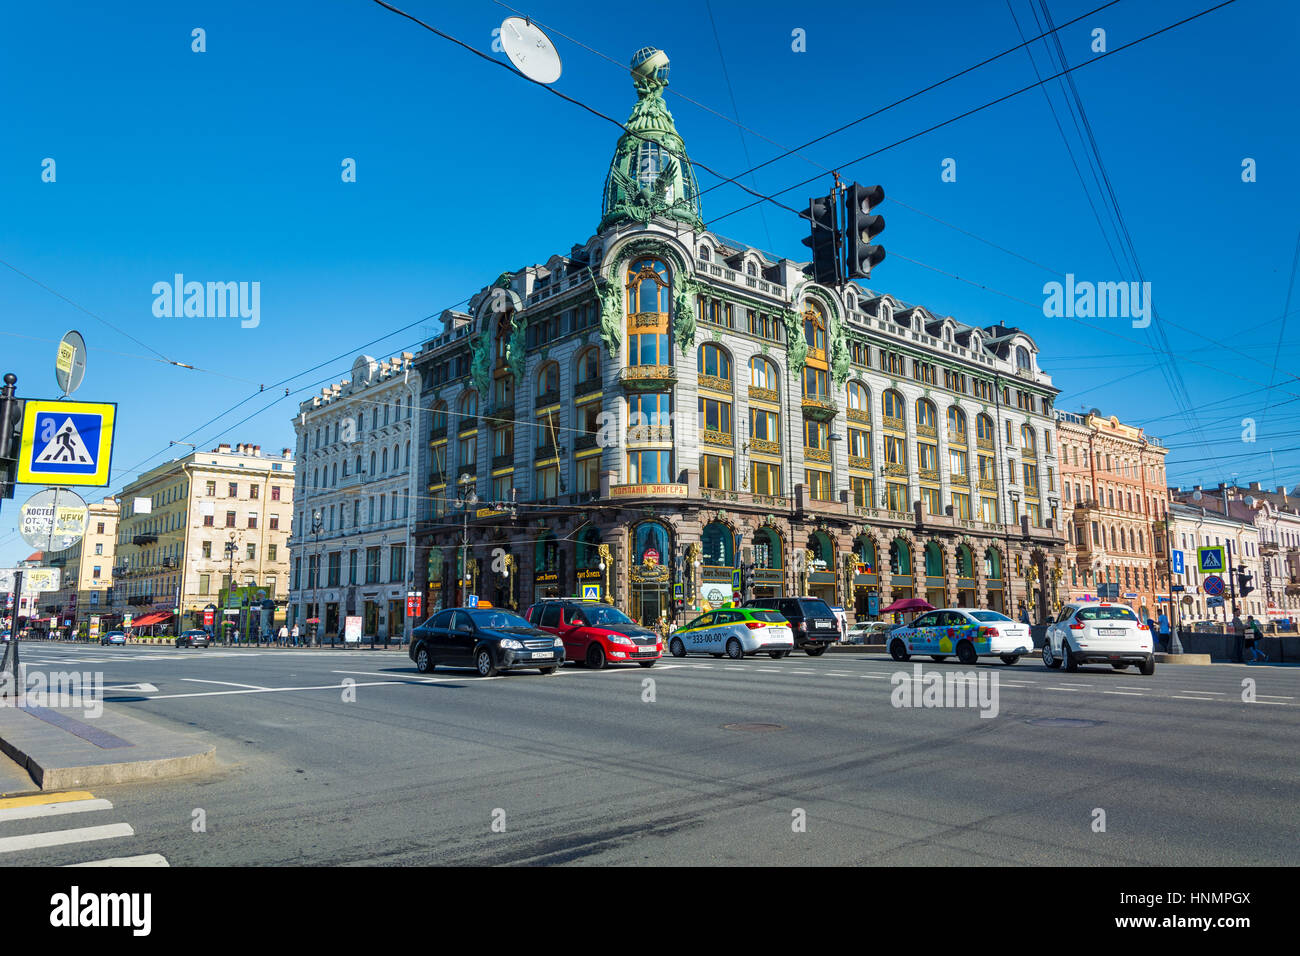 ST. PETERSBURG, Russland - 10. Juli 2016: Frontansicht des The Zinger Building, Sankt Petersburg, Russland. Stockfoto